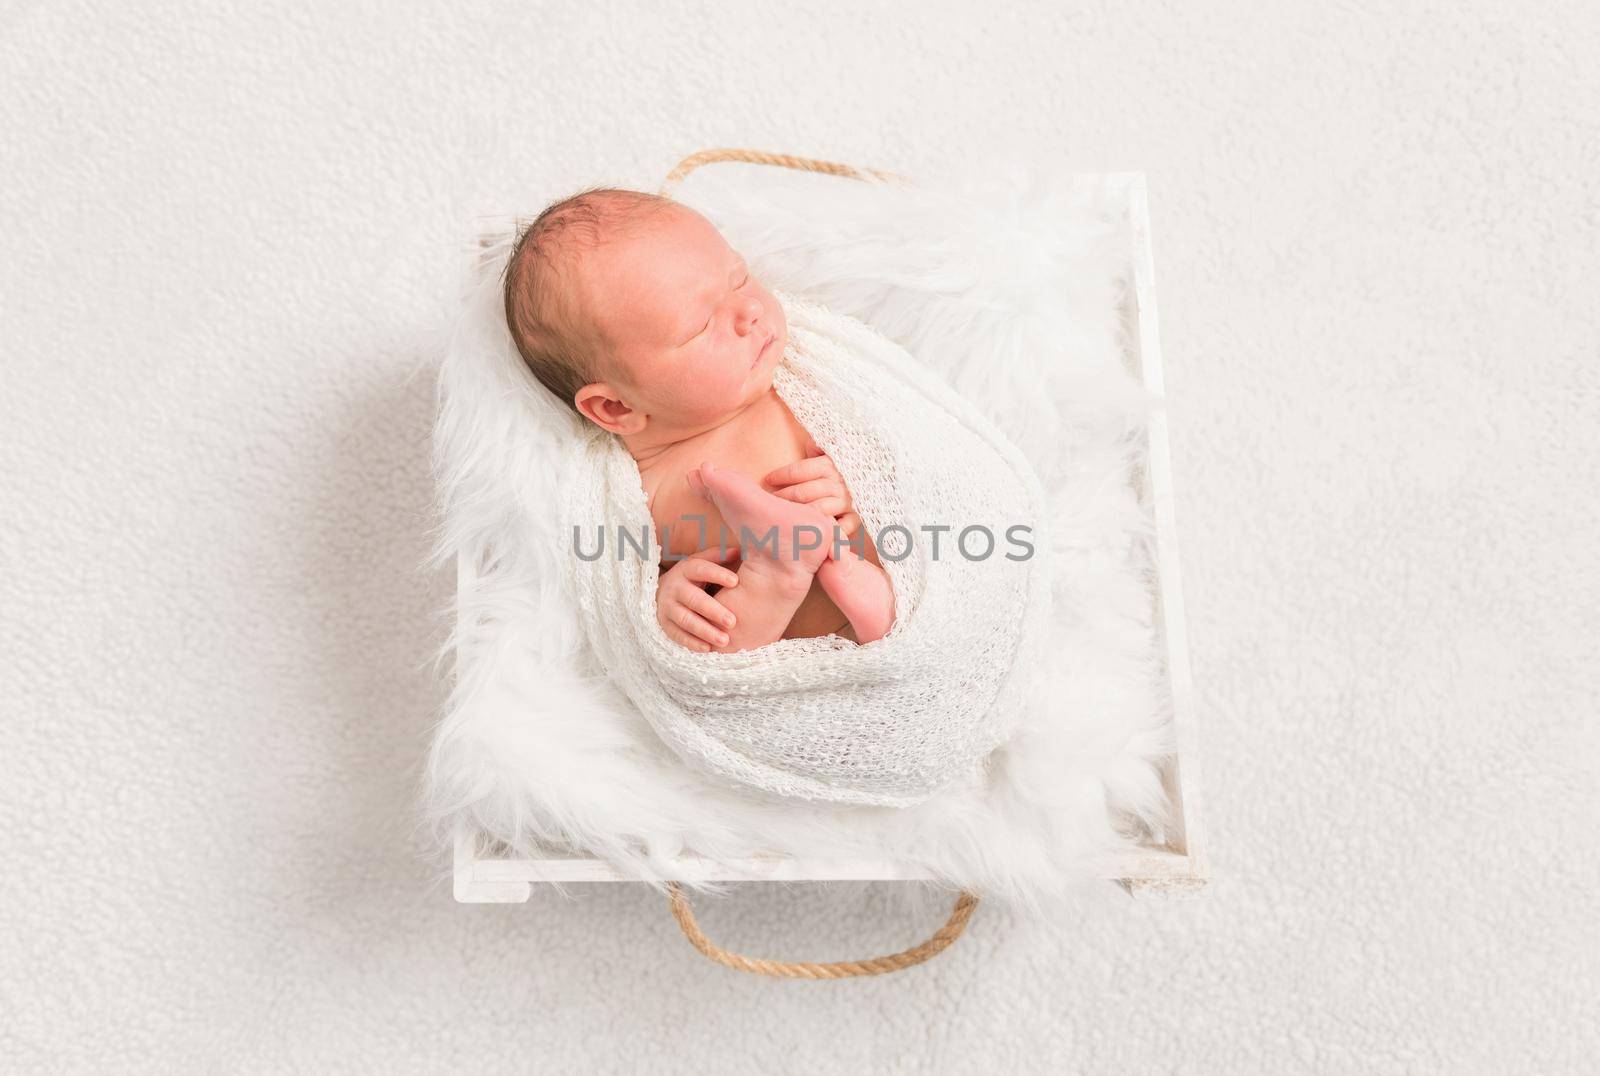 Newborn in a baske, topview by tan4ikk1